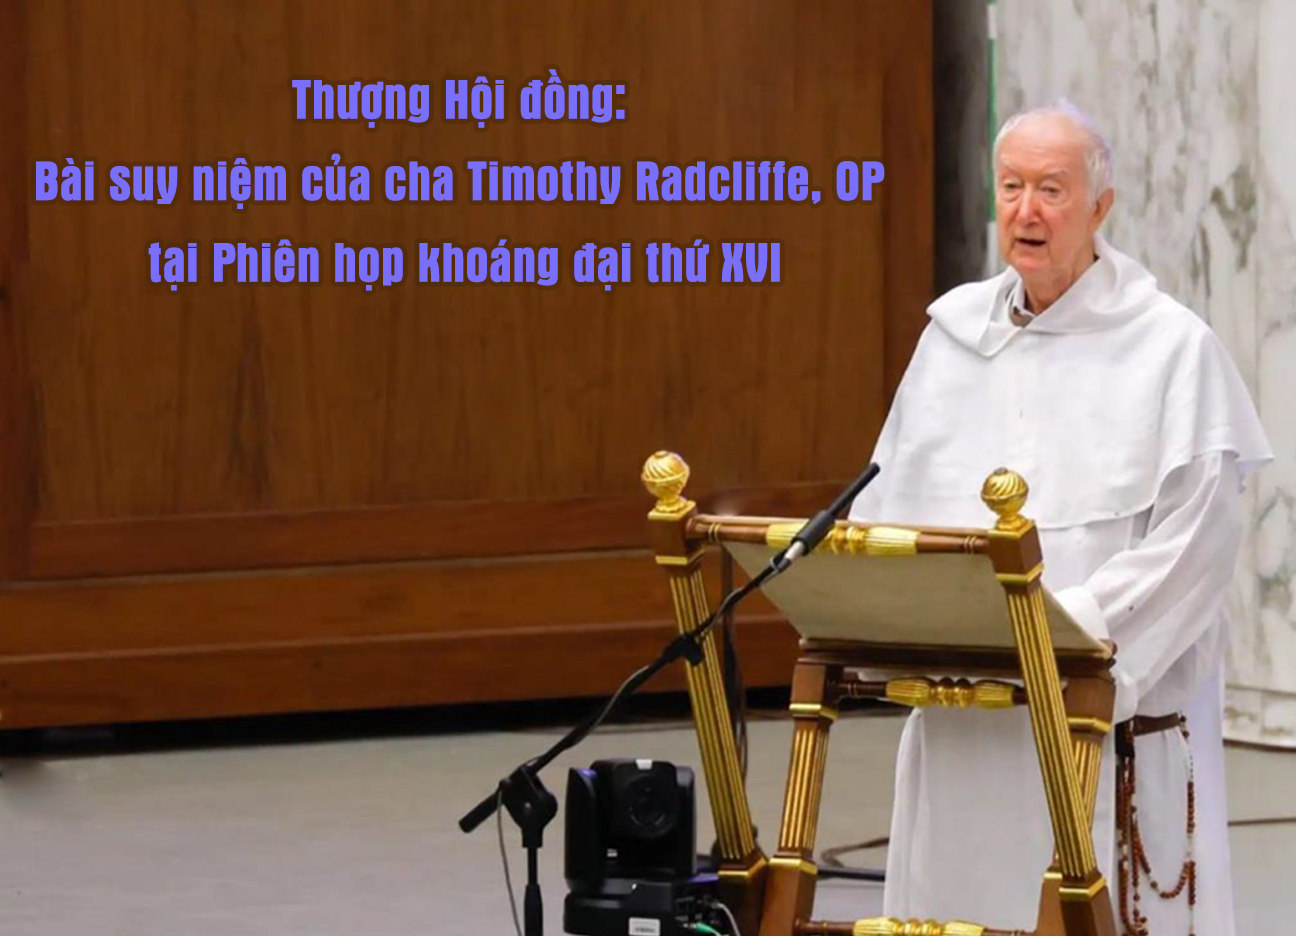 Thượng Hội đồng: Bài suy niệm của cha Timothy Radcliffe, OP tại Phiên họp khoáng đại thứ XVI